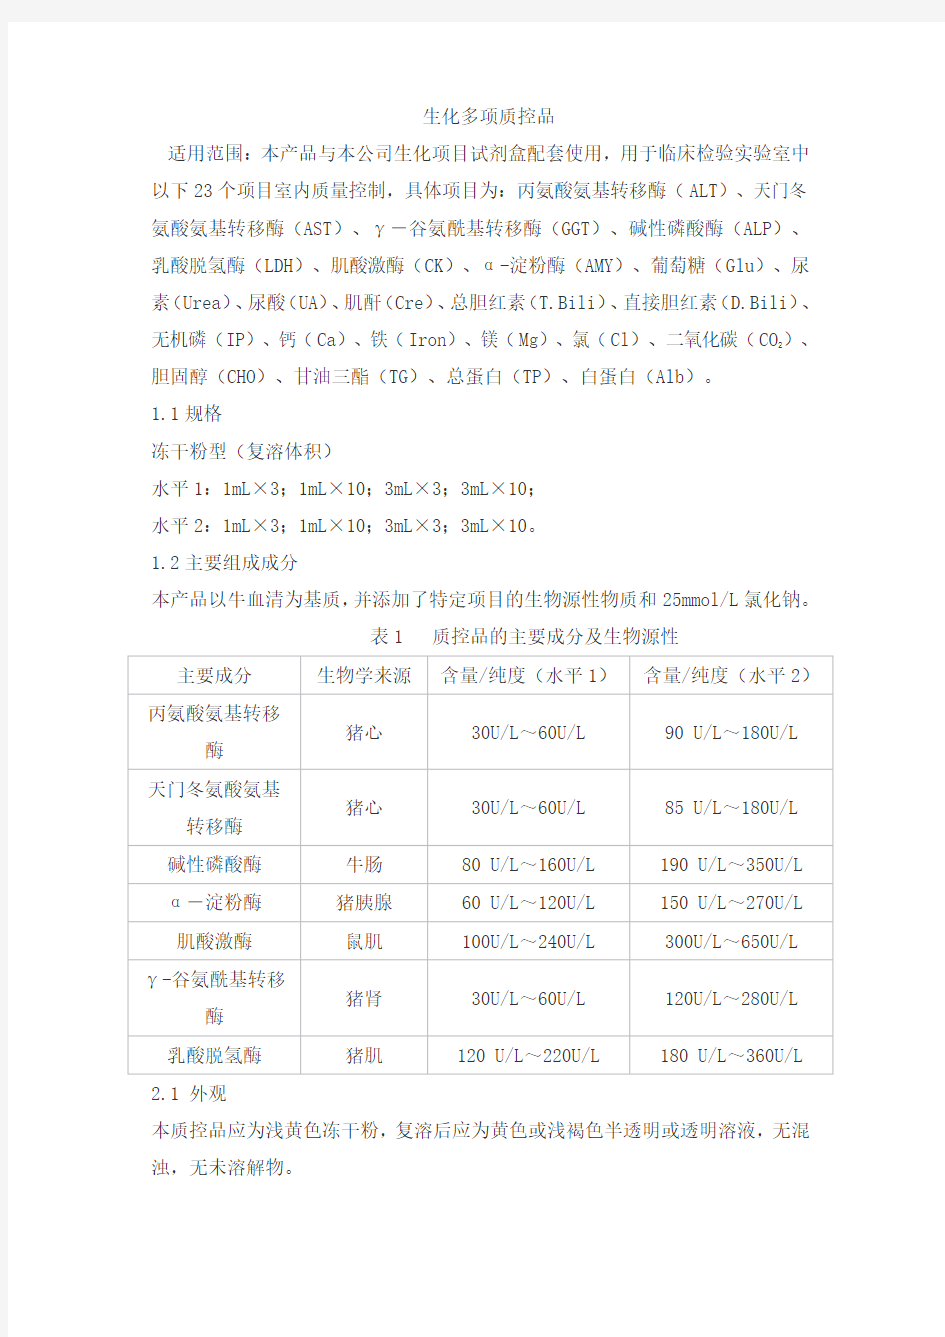 生化多项质控品产品技术要求zhongshengbeikong